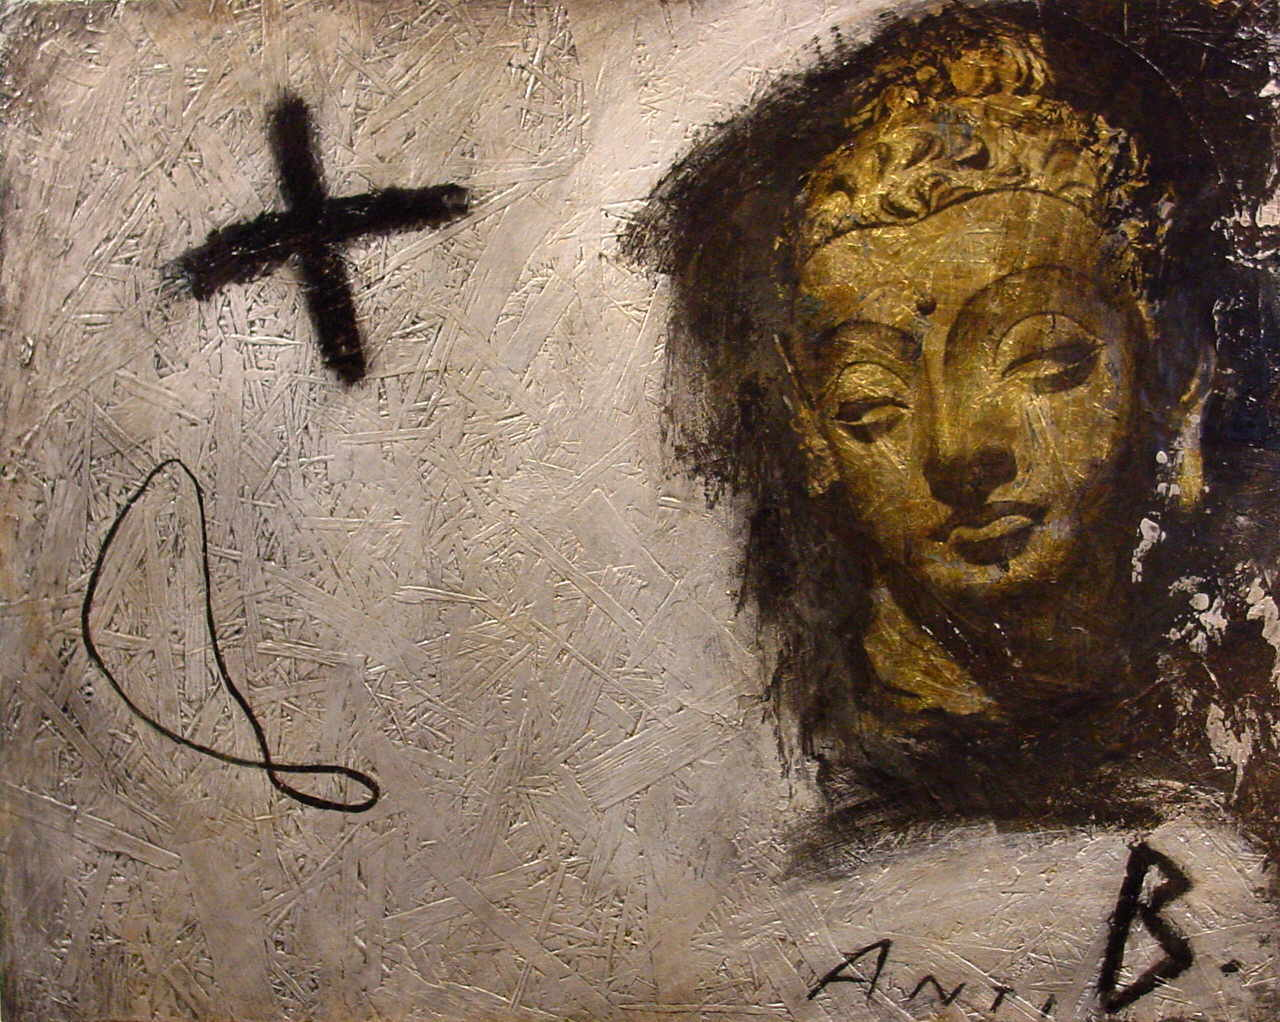 Dewitt Zos 
"Buddha", 2002
Laserbedruckte Transparentfolie, Schlagmetall und Acryl auf OSB
49 x 62 cm